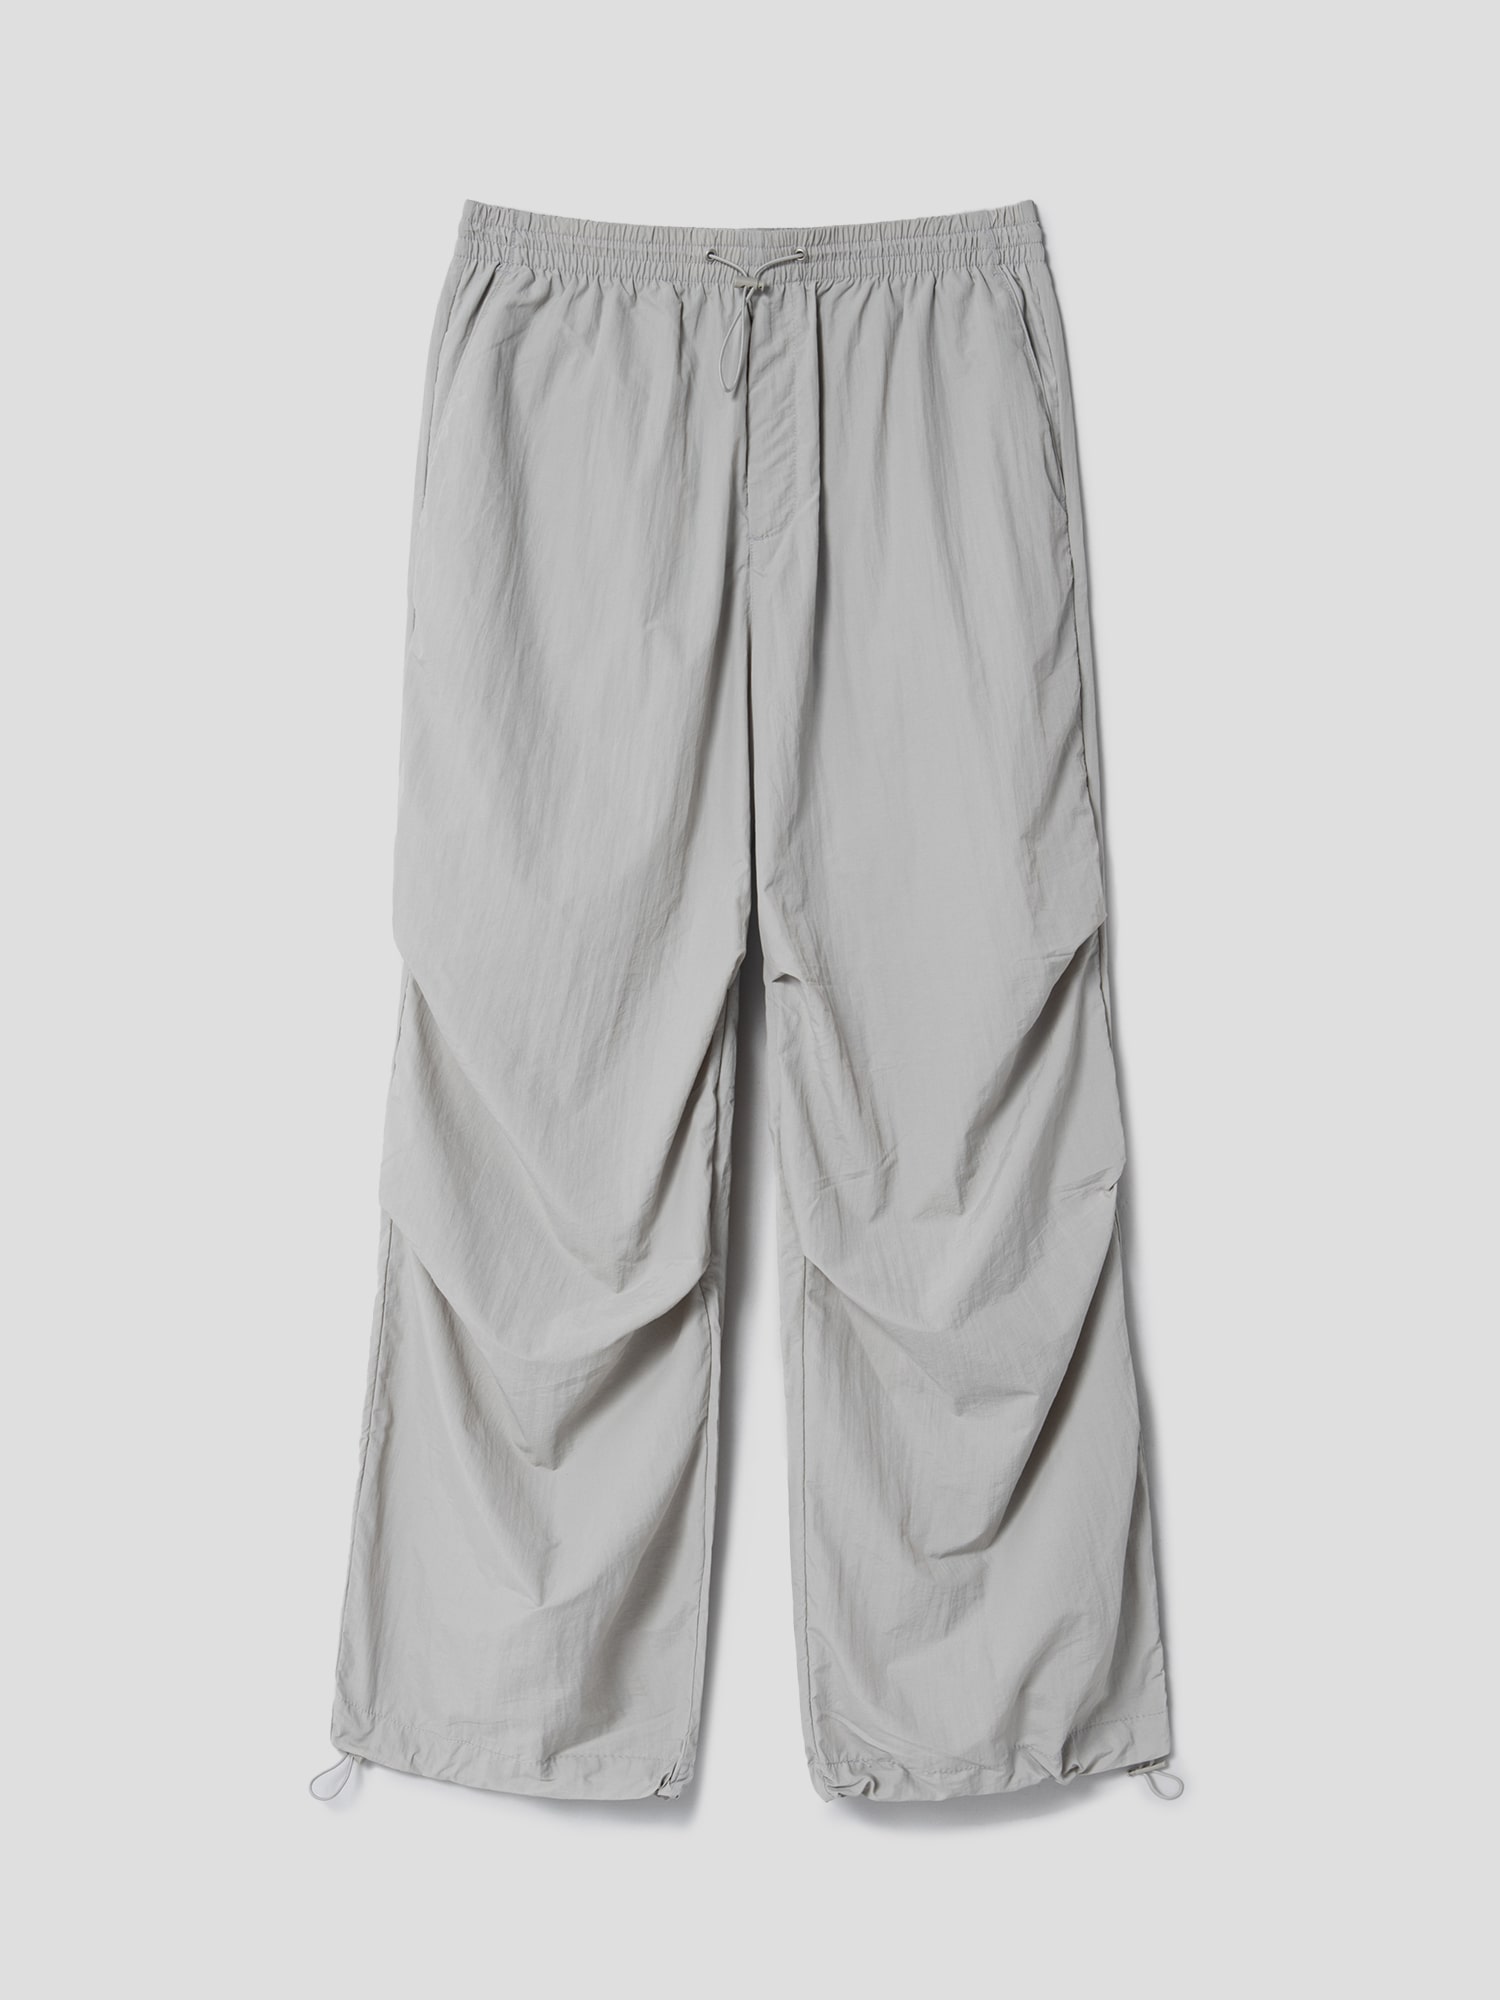 HALARA Nylon Parachute Pants, Gray, Size XS, NWT!